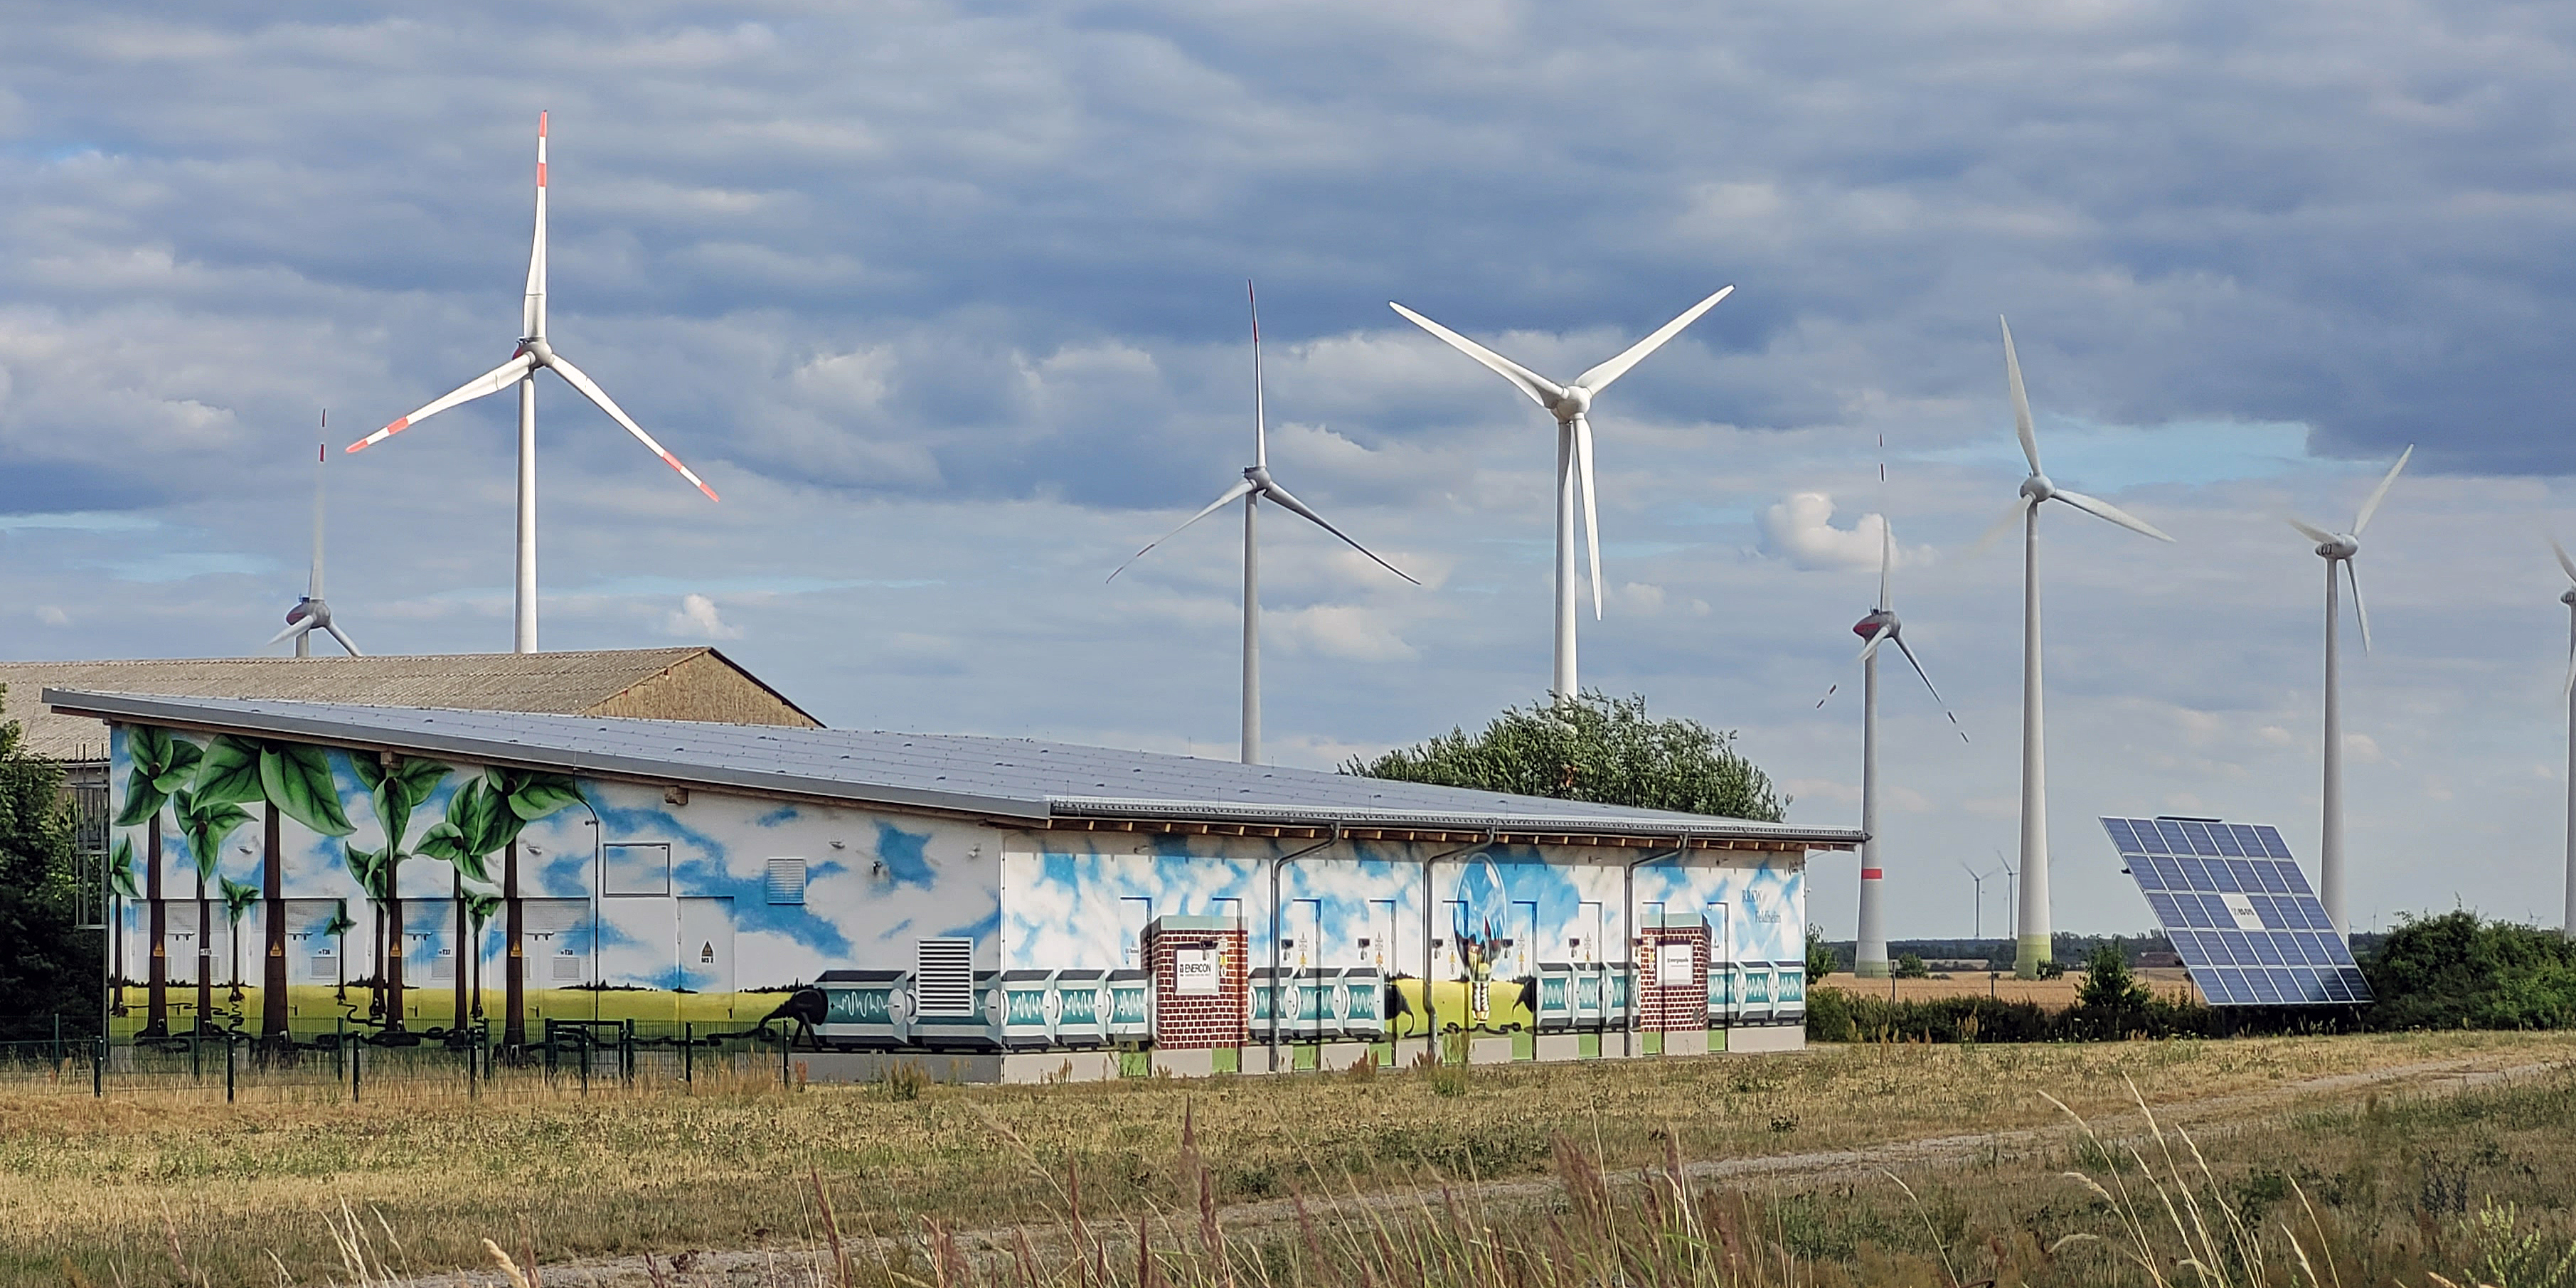 Windkraftanlanlagen, eine Solaranlage und ein flaches Gebäude, in dem elektrische Energie gespeichert wird. Die Fassade ist farbig gestaltet.